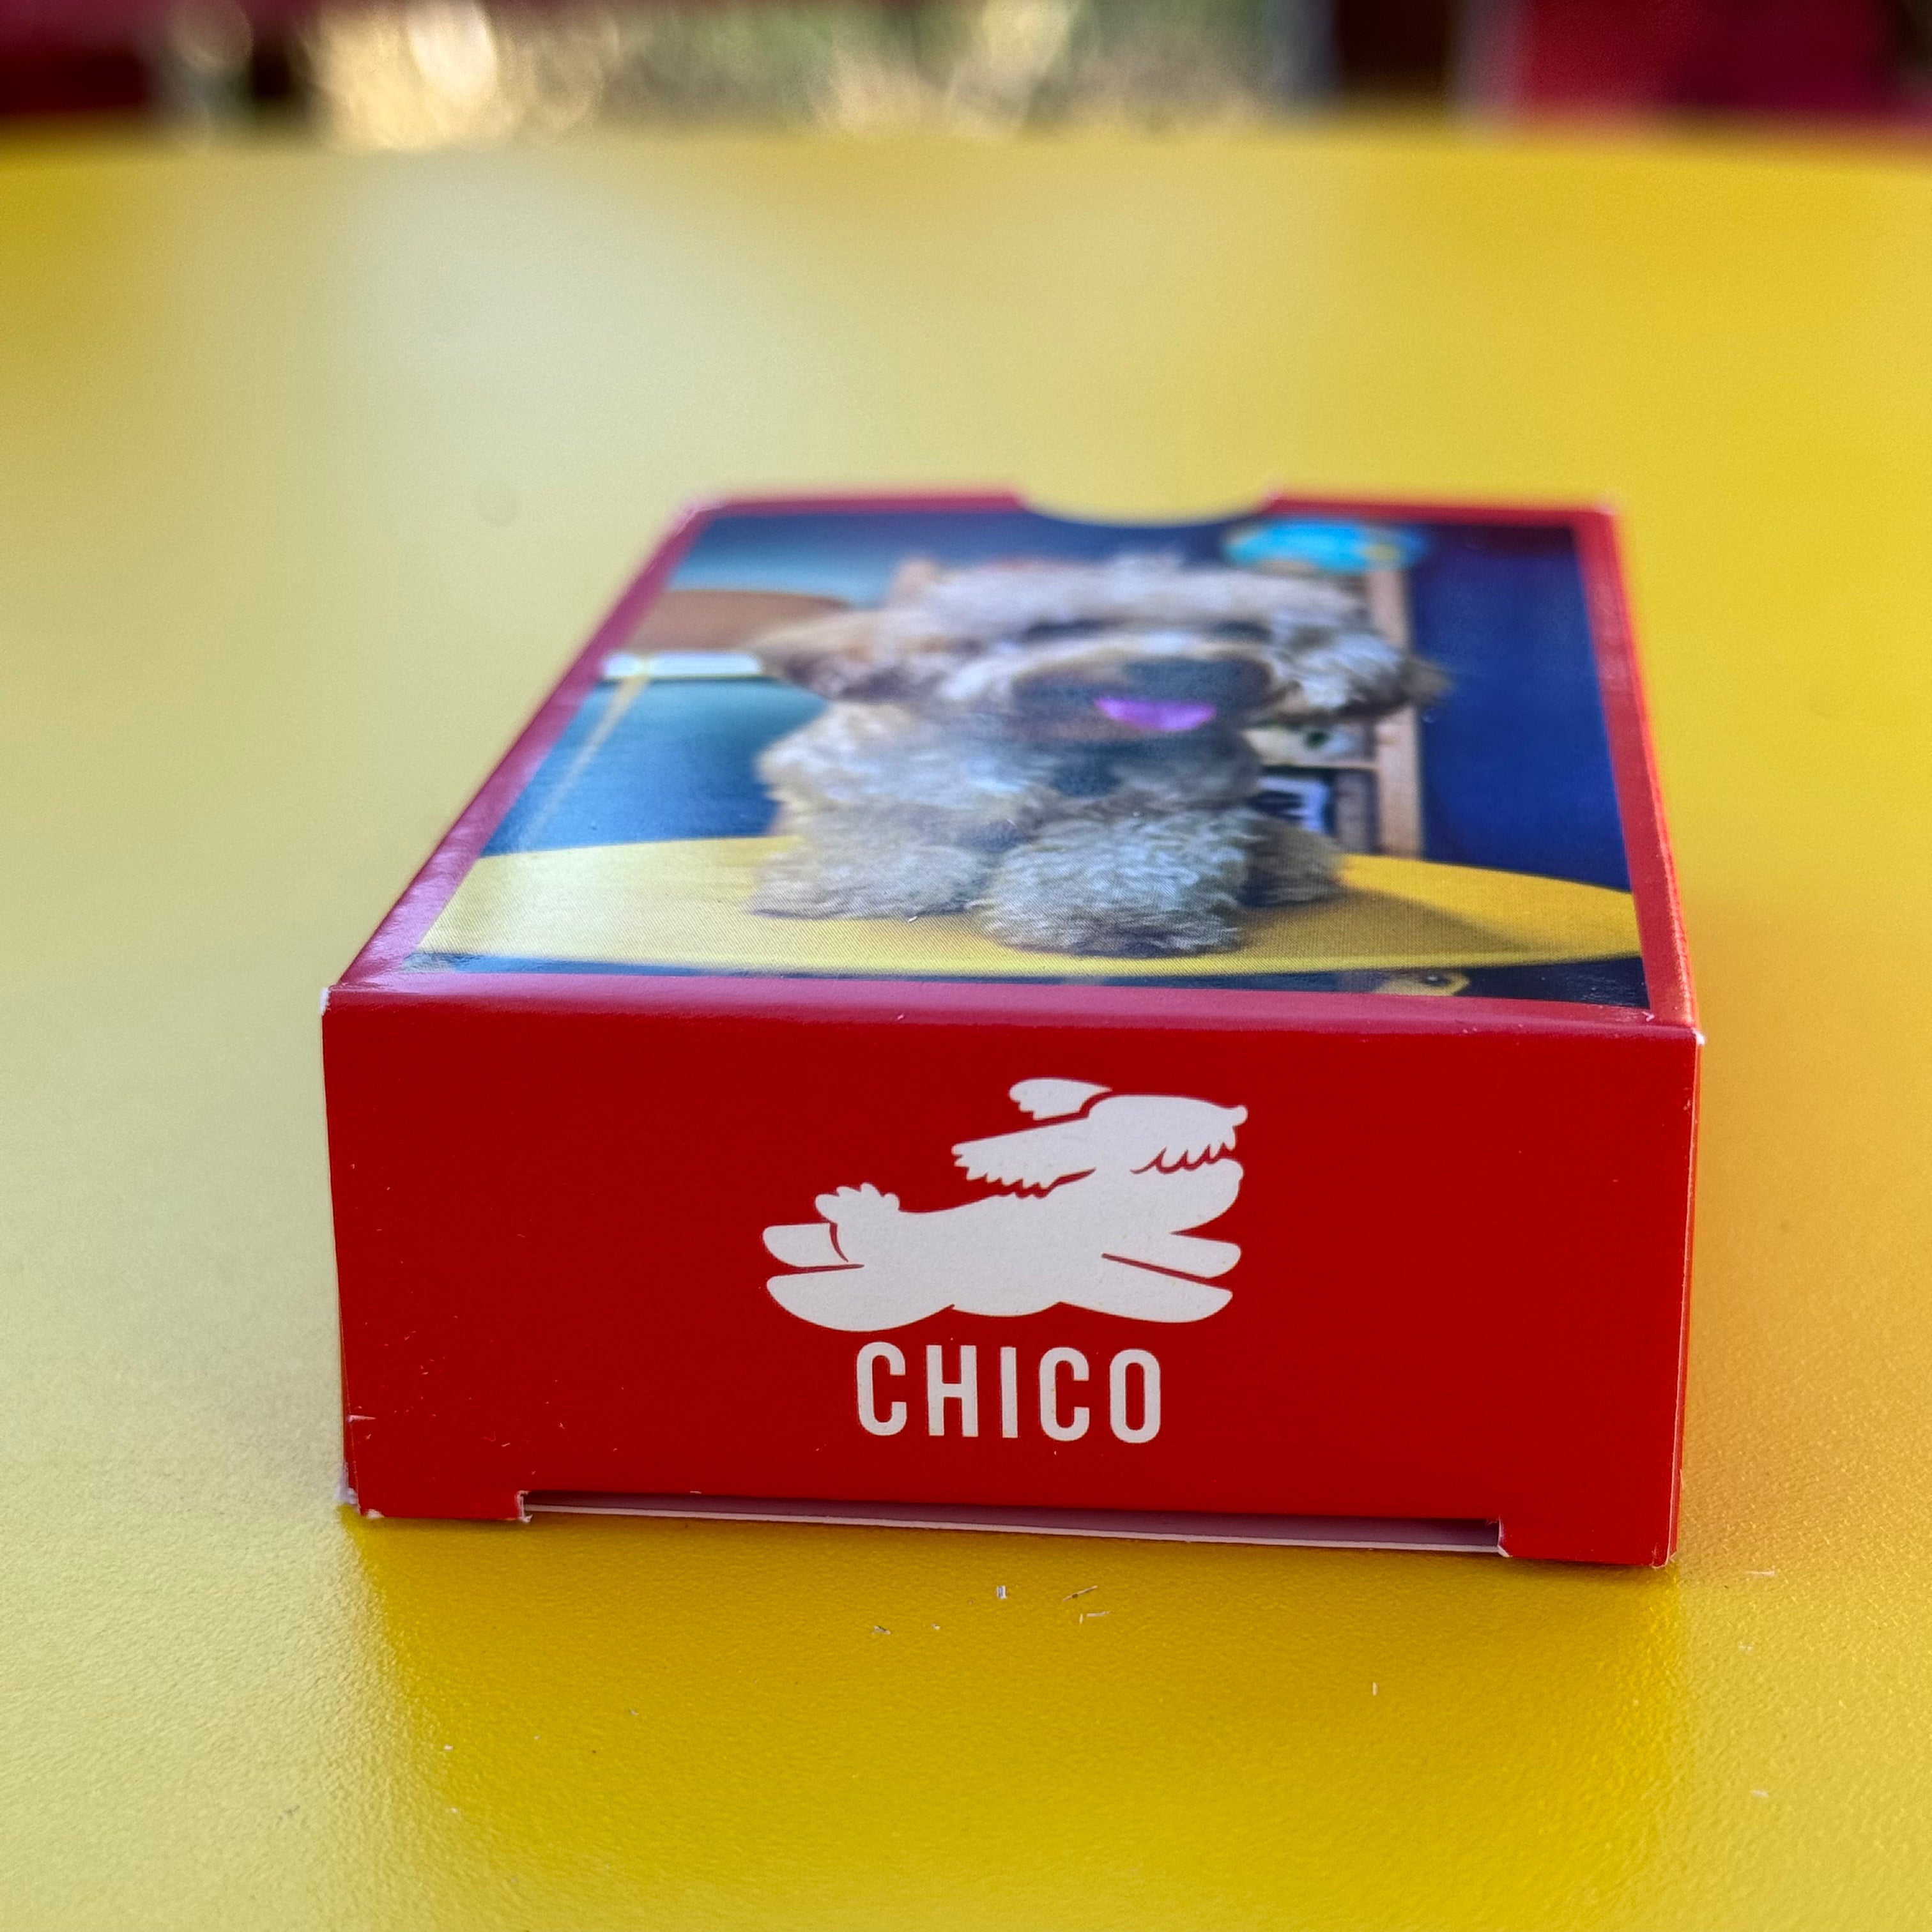 Le carte di Chico